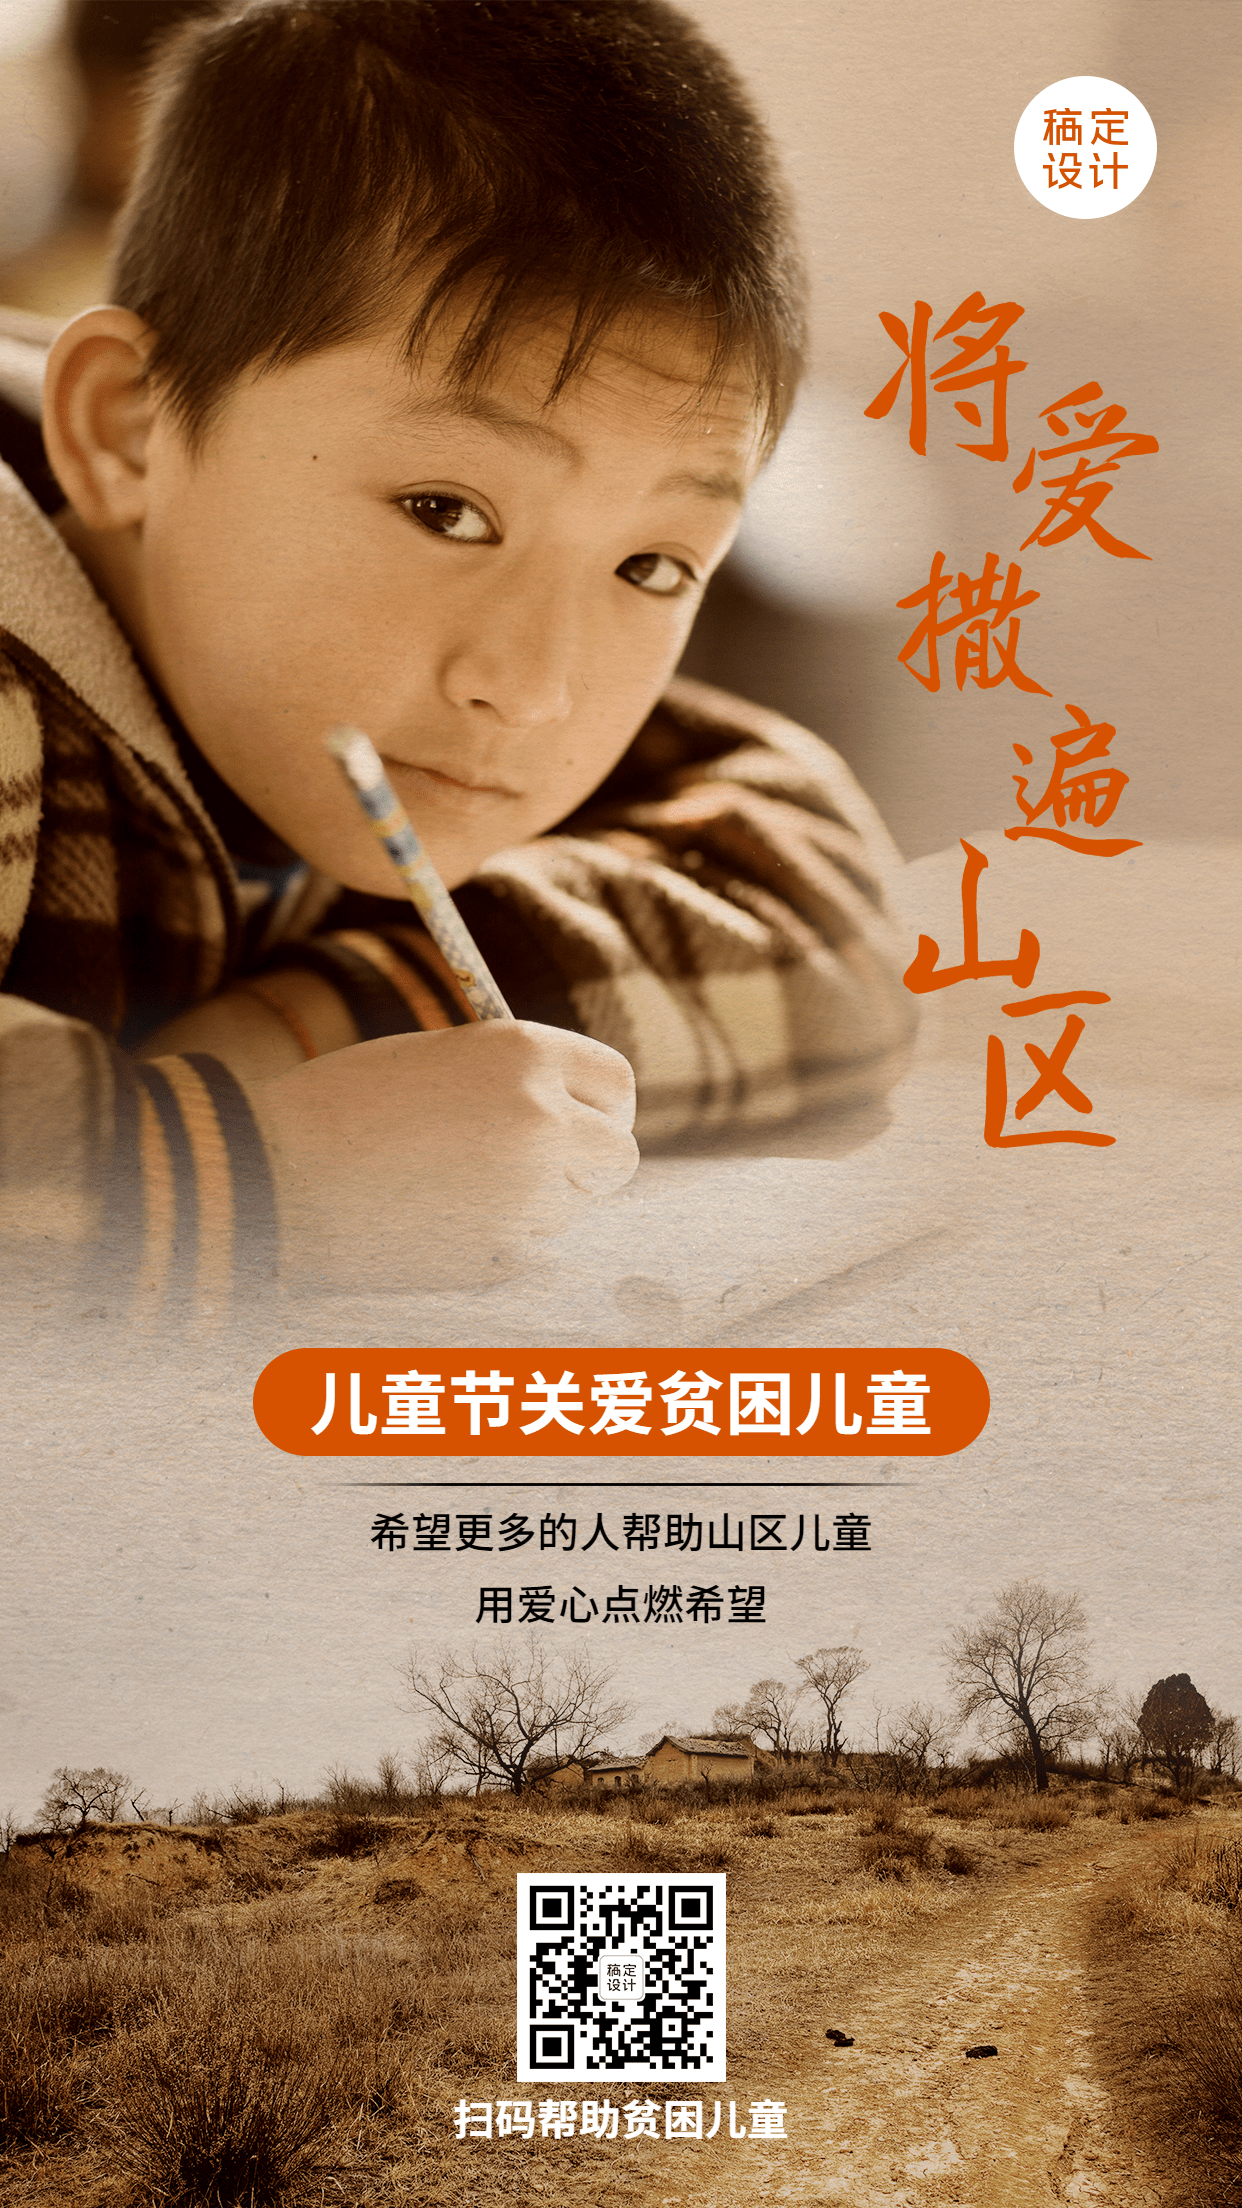 六一儿童节关爱山区贫困儿童公益宣传海报预览效果